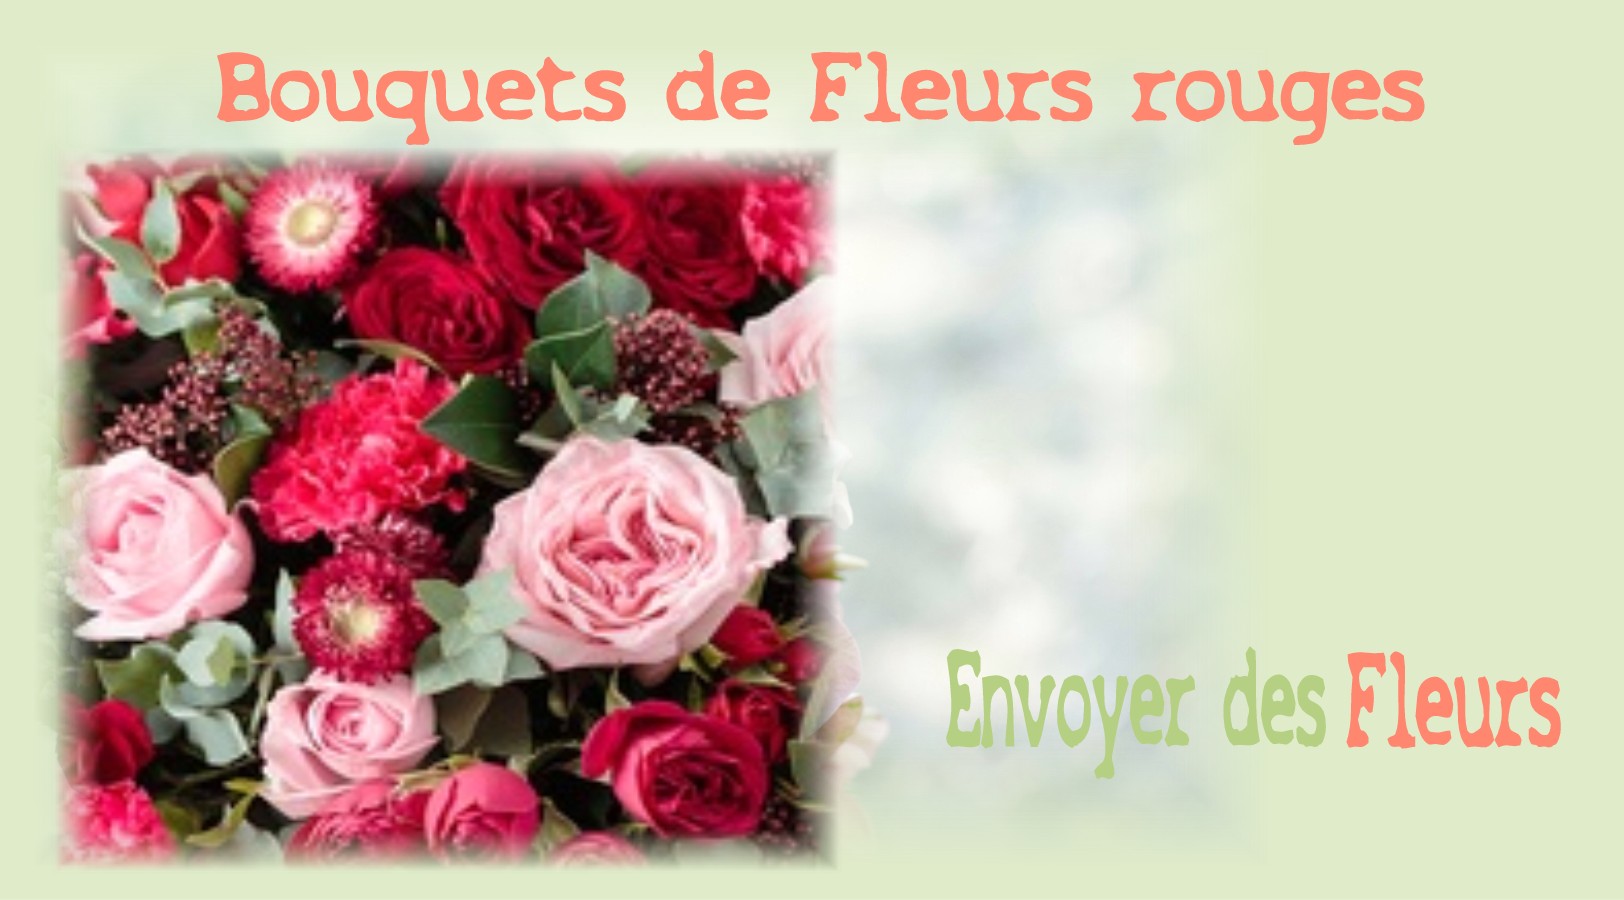 BOUQUETS DE FLEURS ROUGES - FLEURISTE LILLE (59) - ENVOYER DES FLEURS